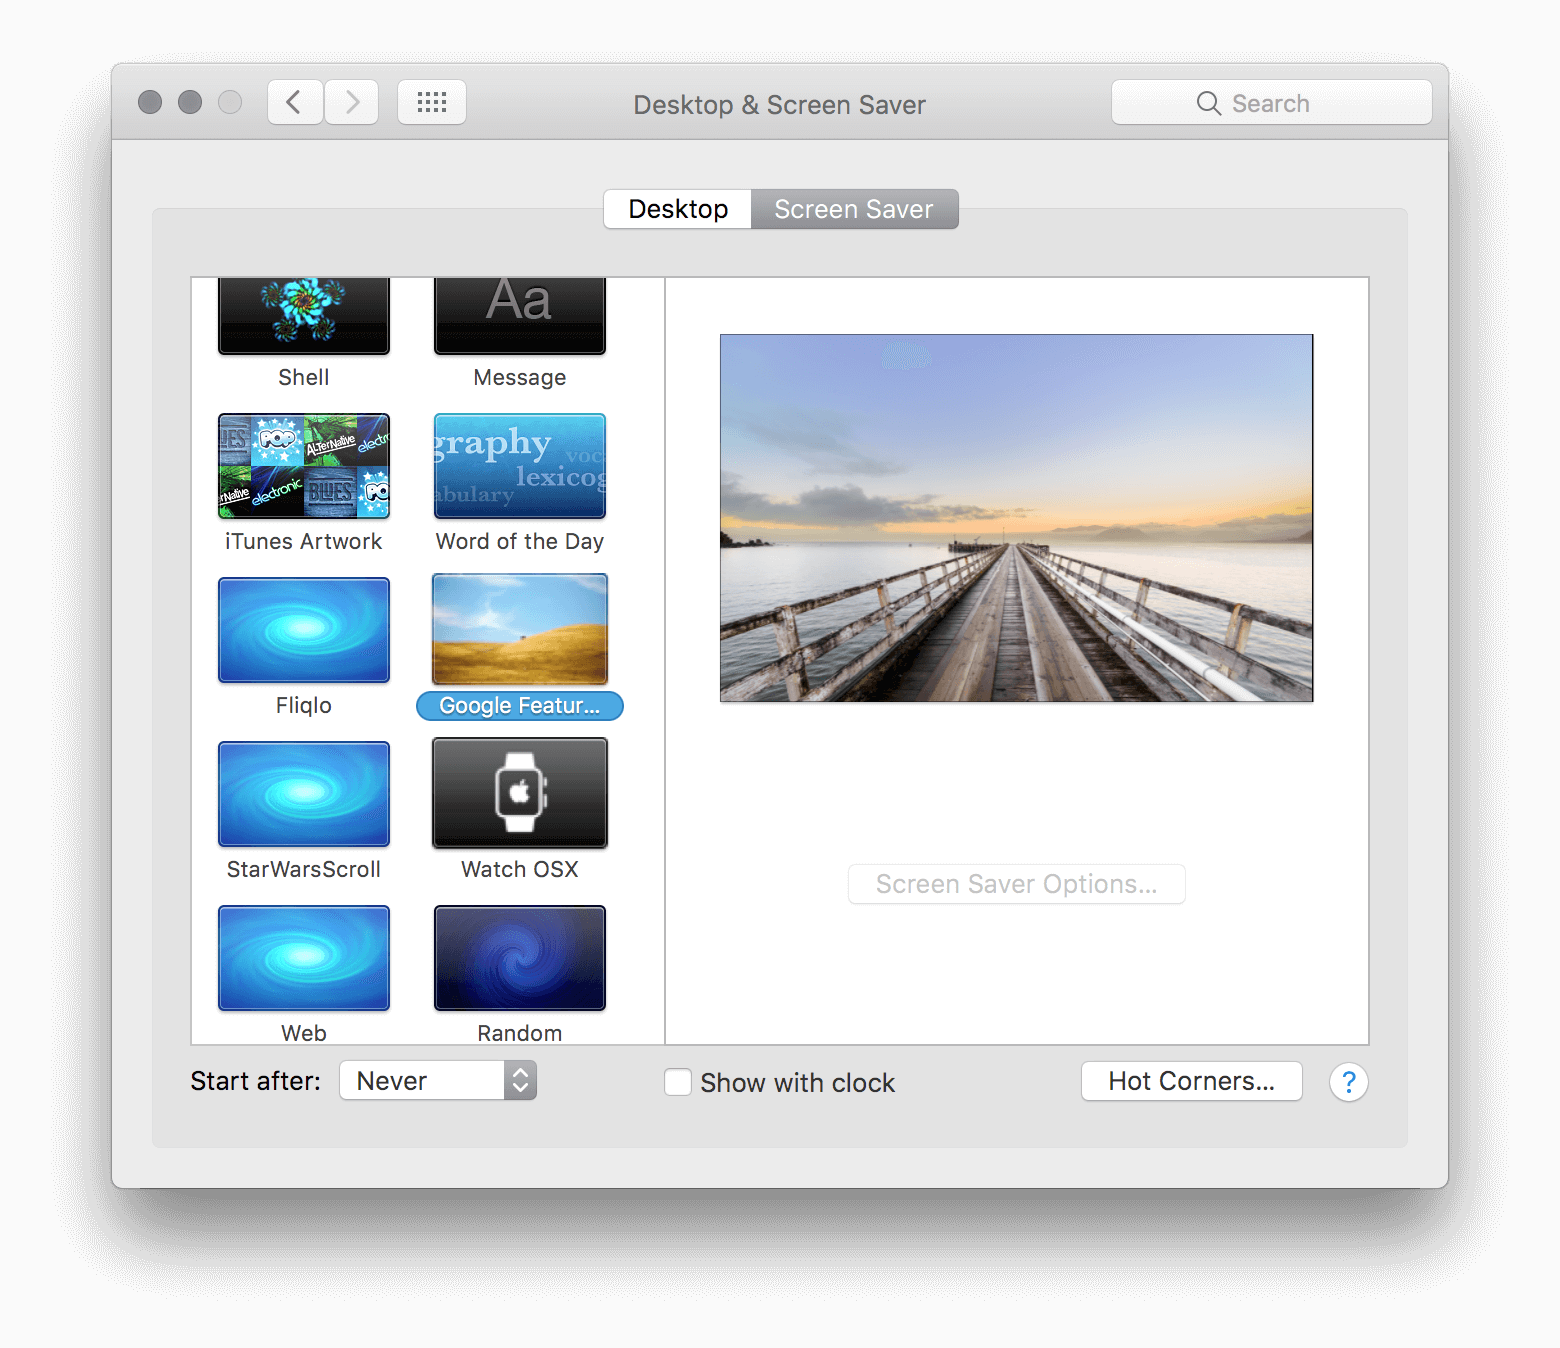 chromecast screensaver for mac